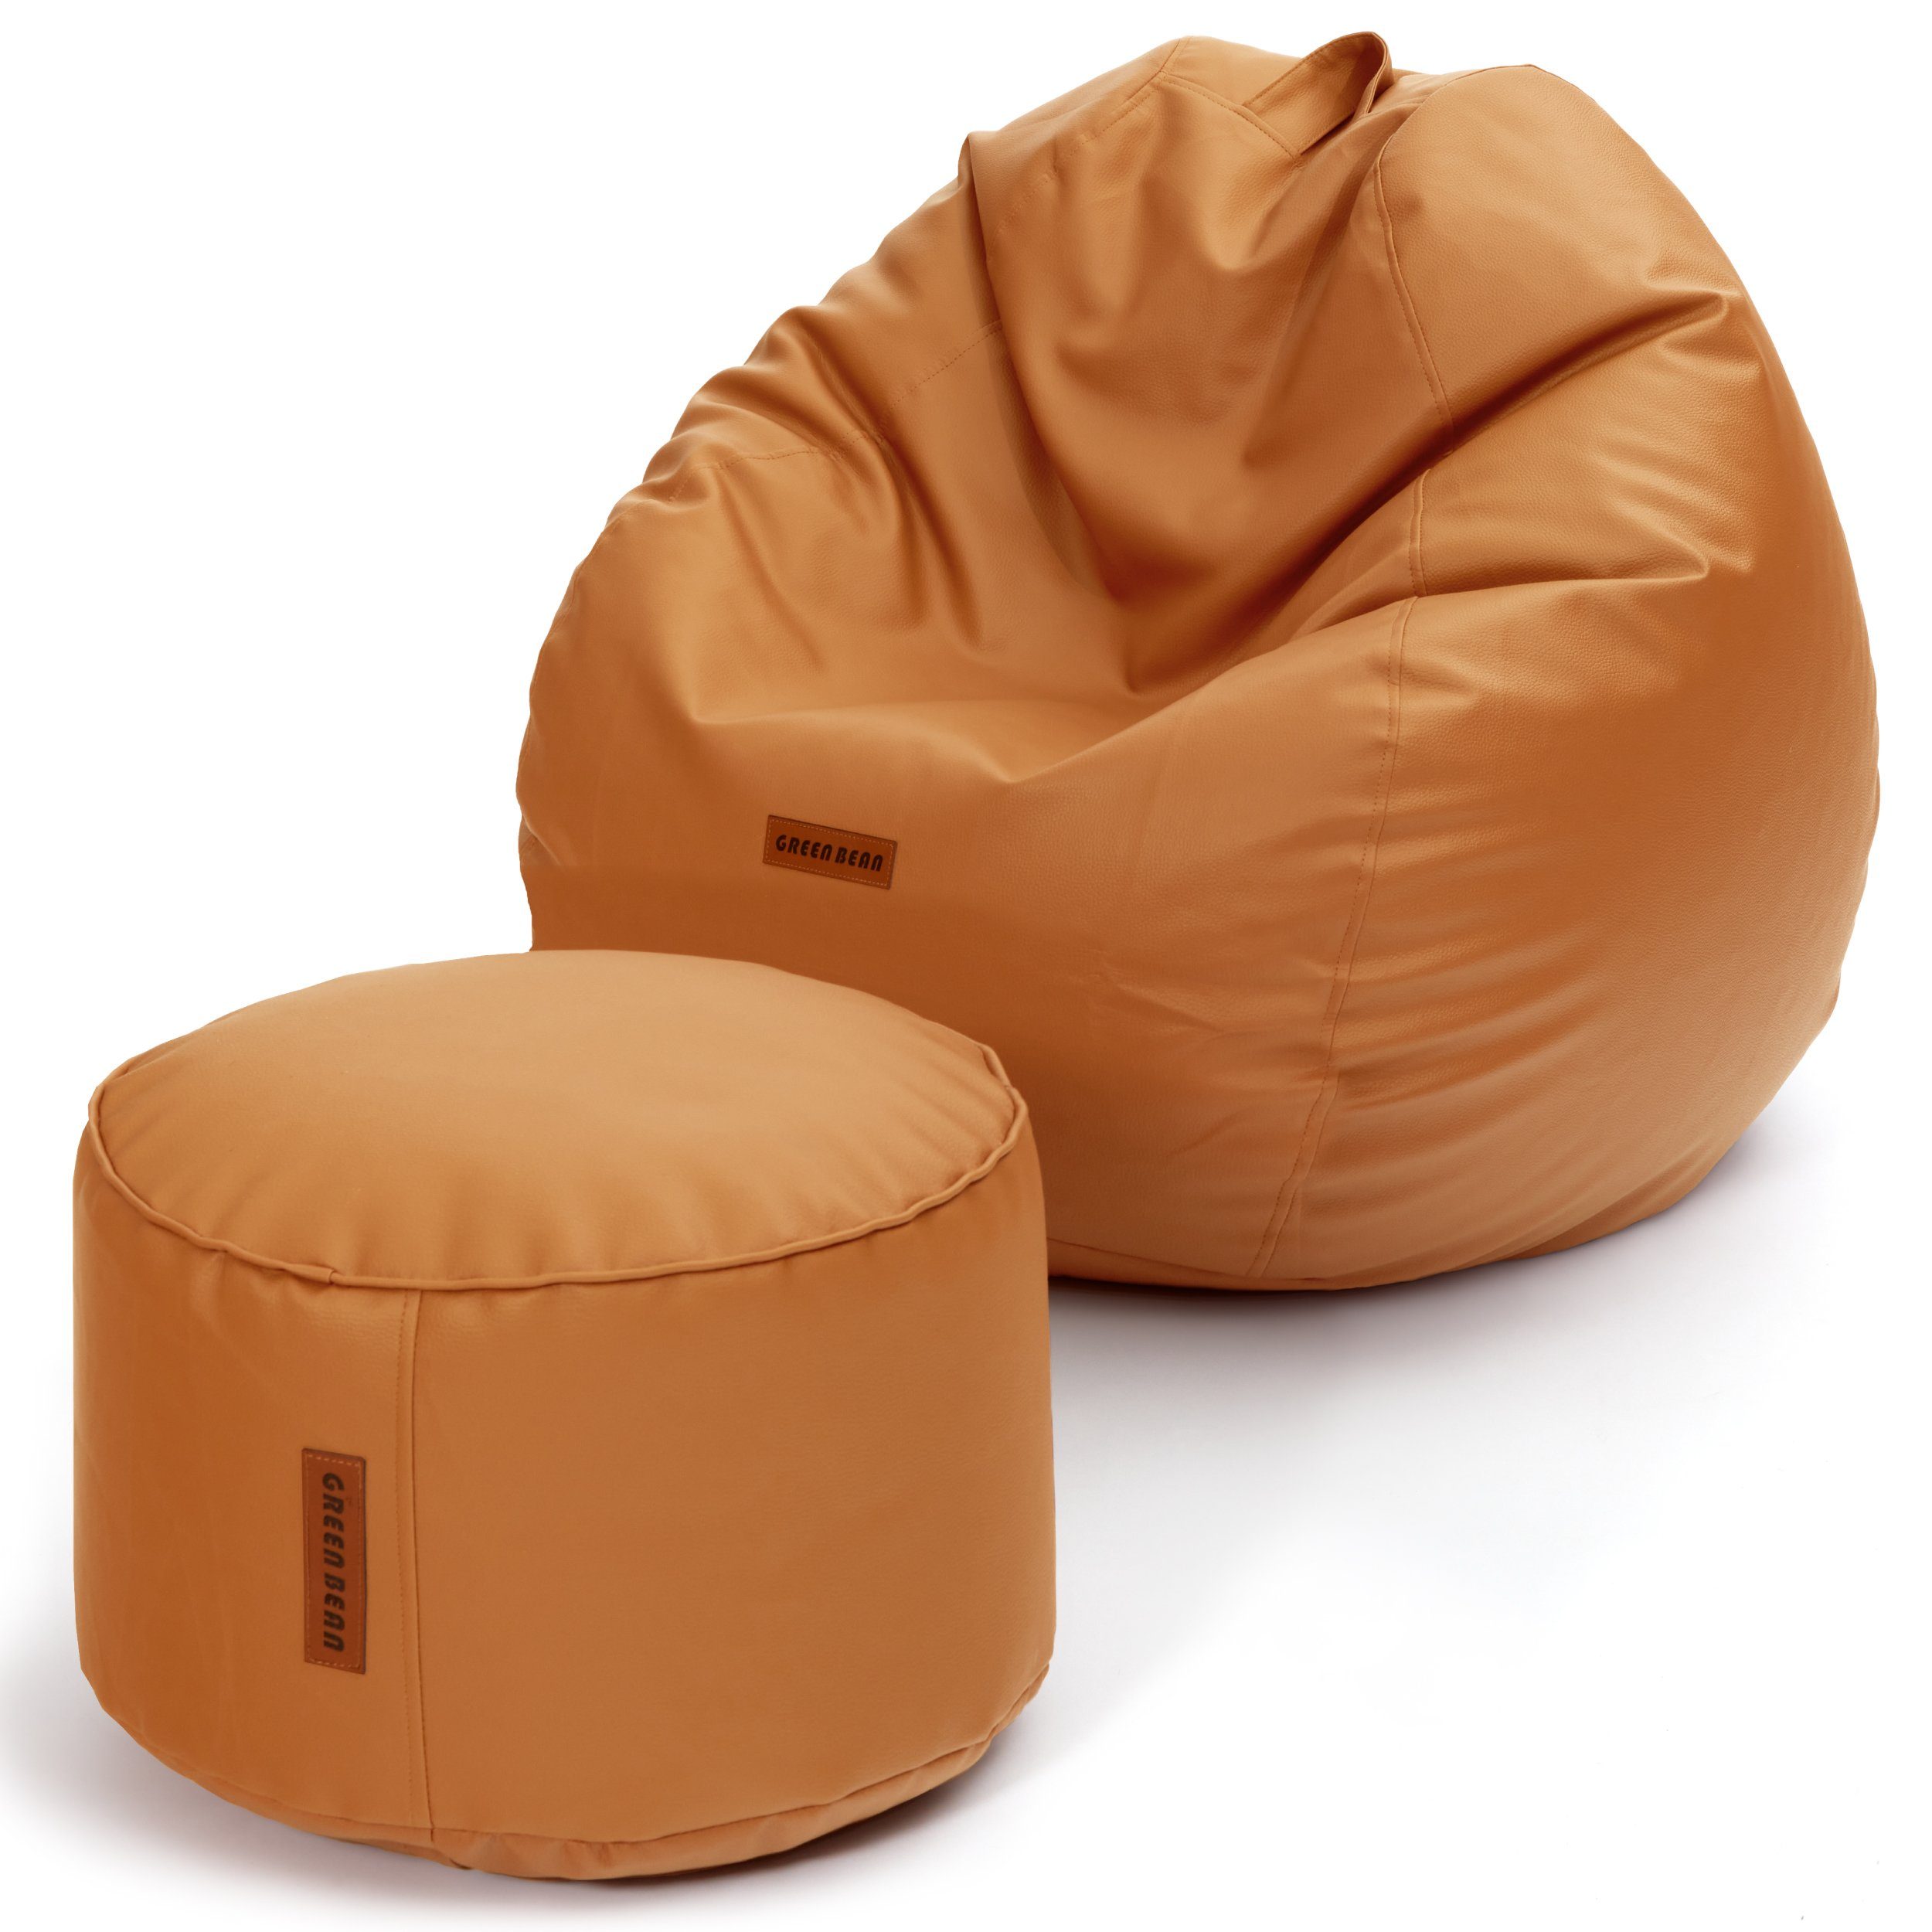 Green Bean Sitzsack XXL + Pouf als Set aus Kunstleder (Indoor / Outdoor, 3x Farben und verschiedene Kombinationen), Couch Kissen Riesensitzsack Lounge Chair Gamingstuhl Hocker Fußschemel